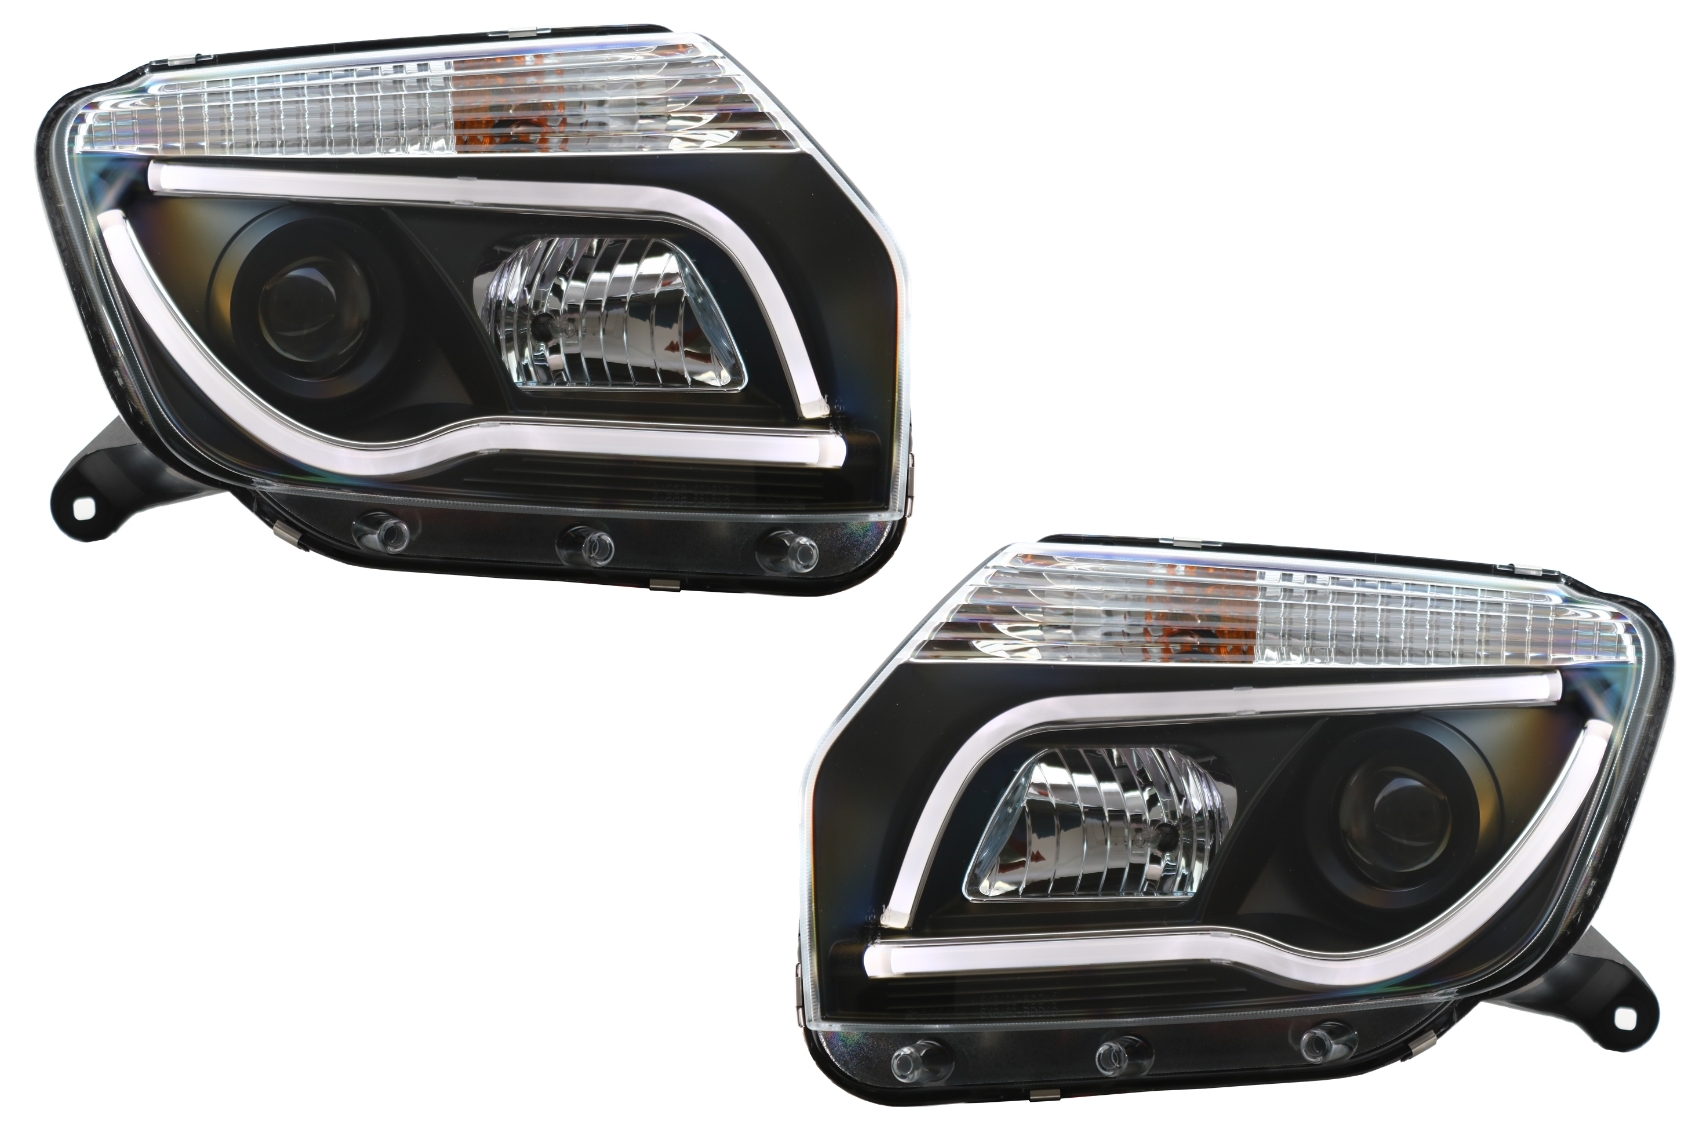 Dacia Duster I (2009-2014) Tube Light Bar Black Edition modellhez használható LED-es fényszórók